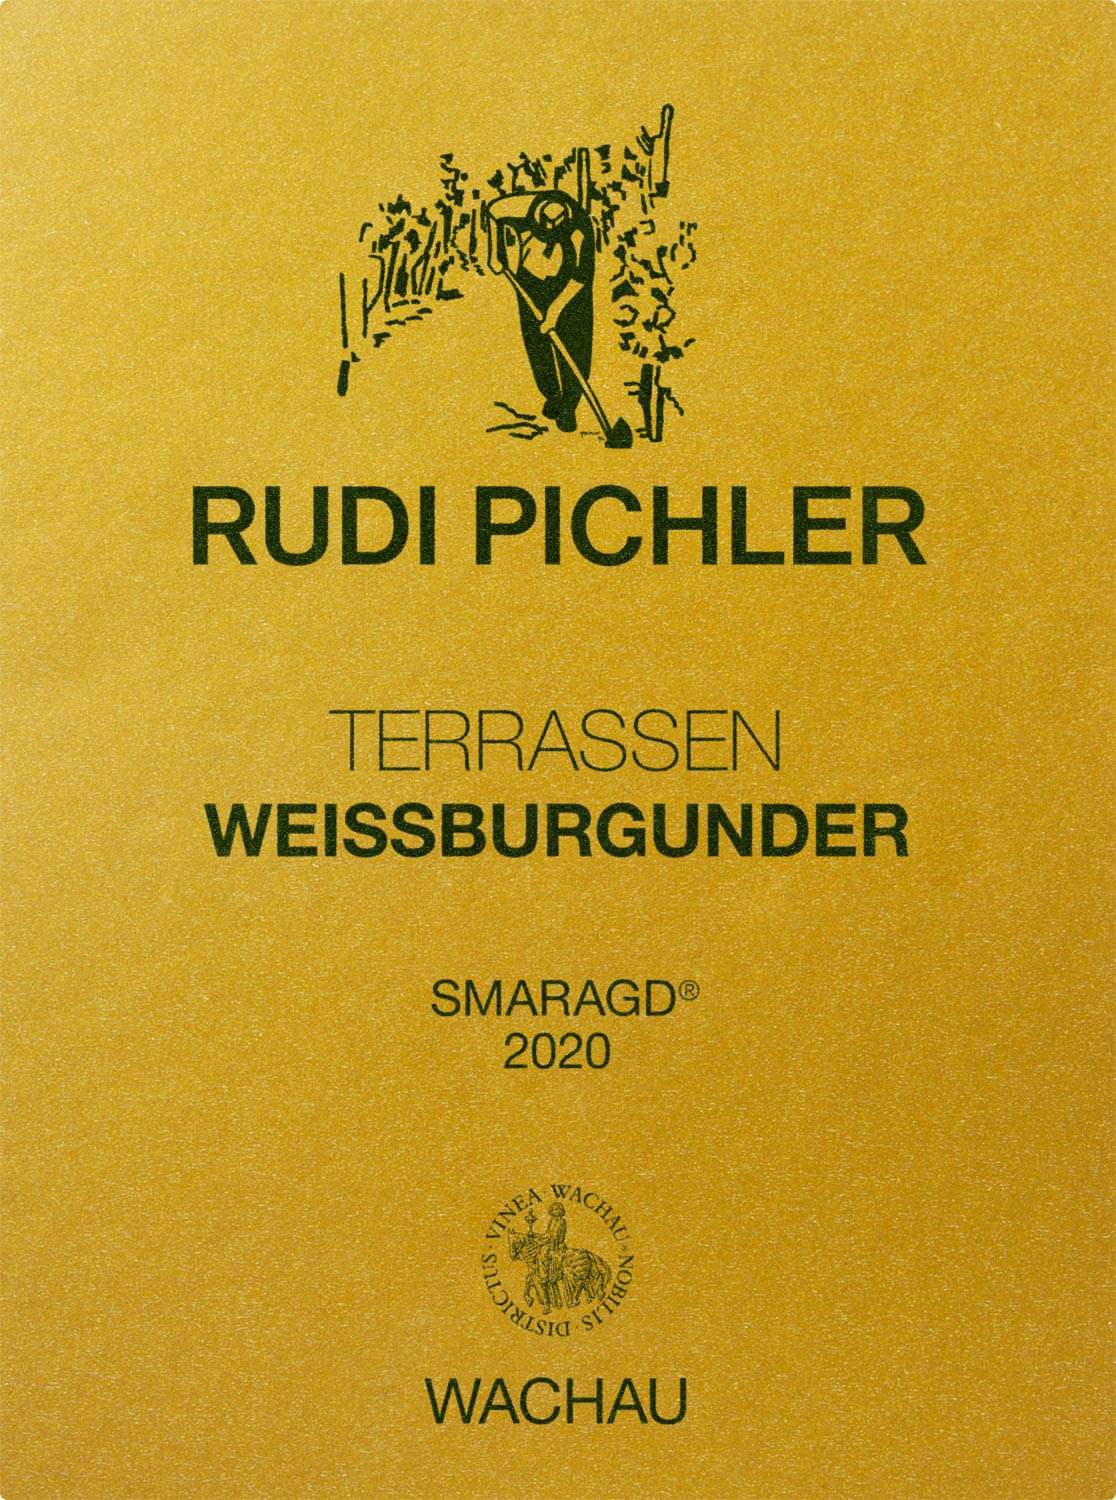 Rudi Pichler Terrassen Weißburgunder Smaragd 2020